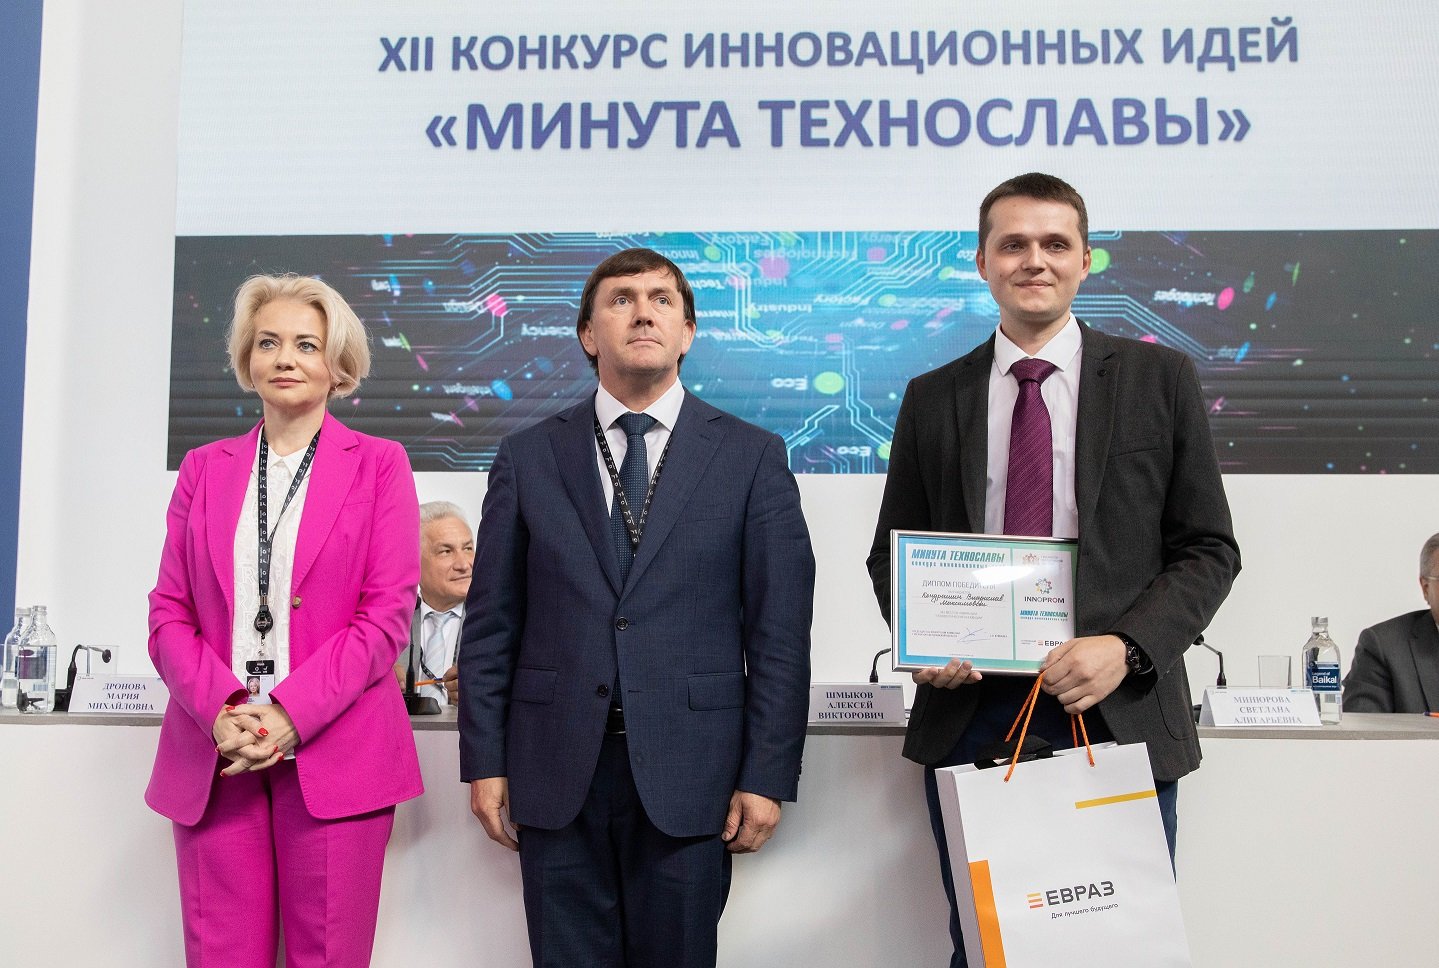 ЕВРАЗ в двенадцатый раз стал генеральным партнером конкурса инновационных идей «Минута технославы»